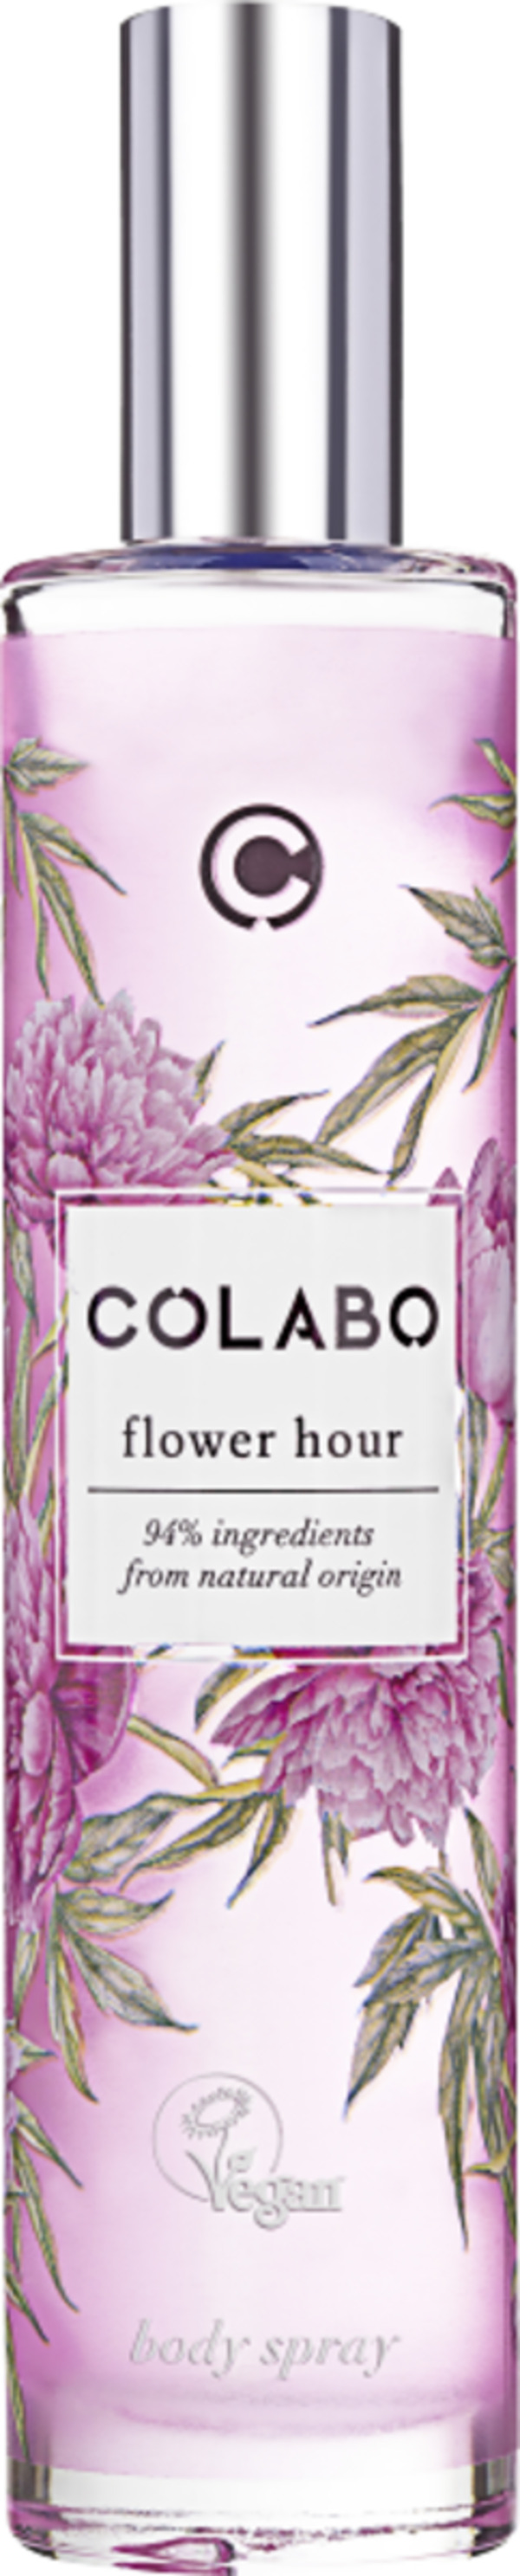 Bild 1 von COLABO Flower Hour, Bodyspray 50 ml